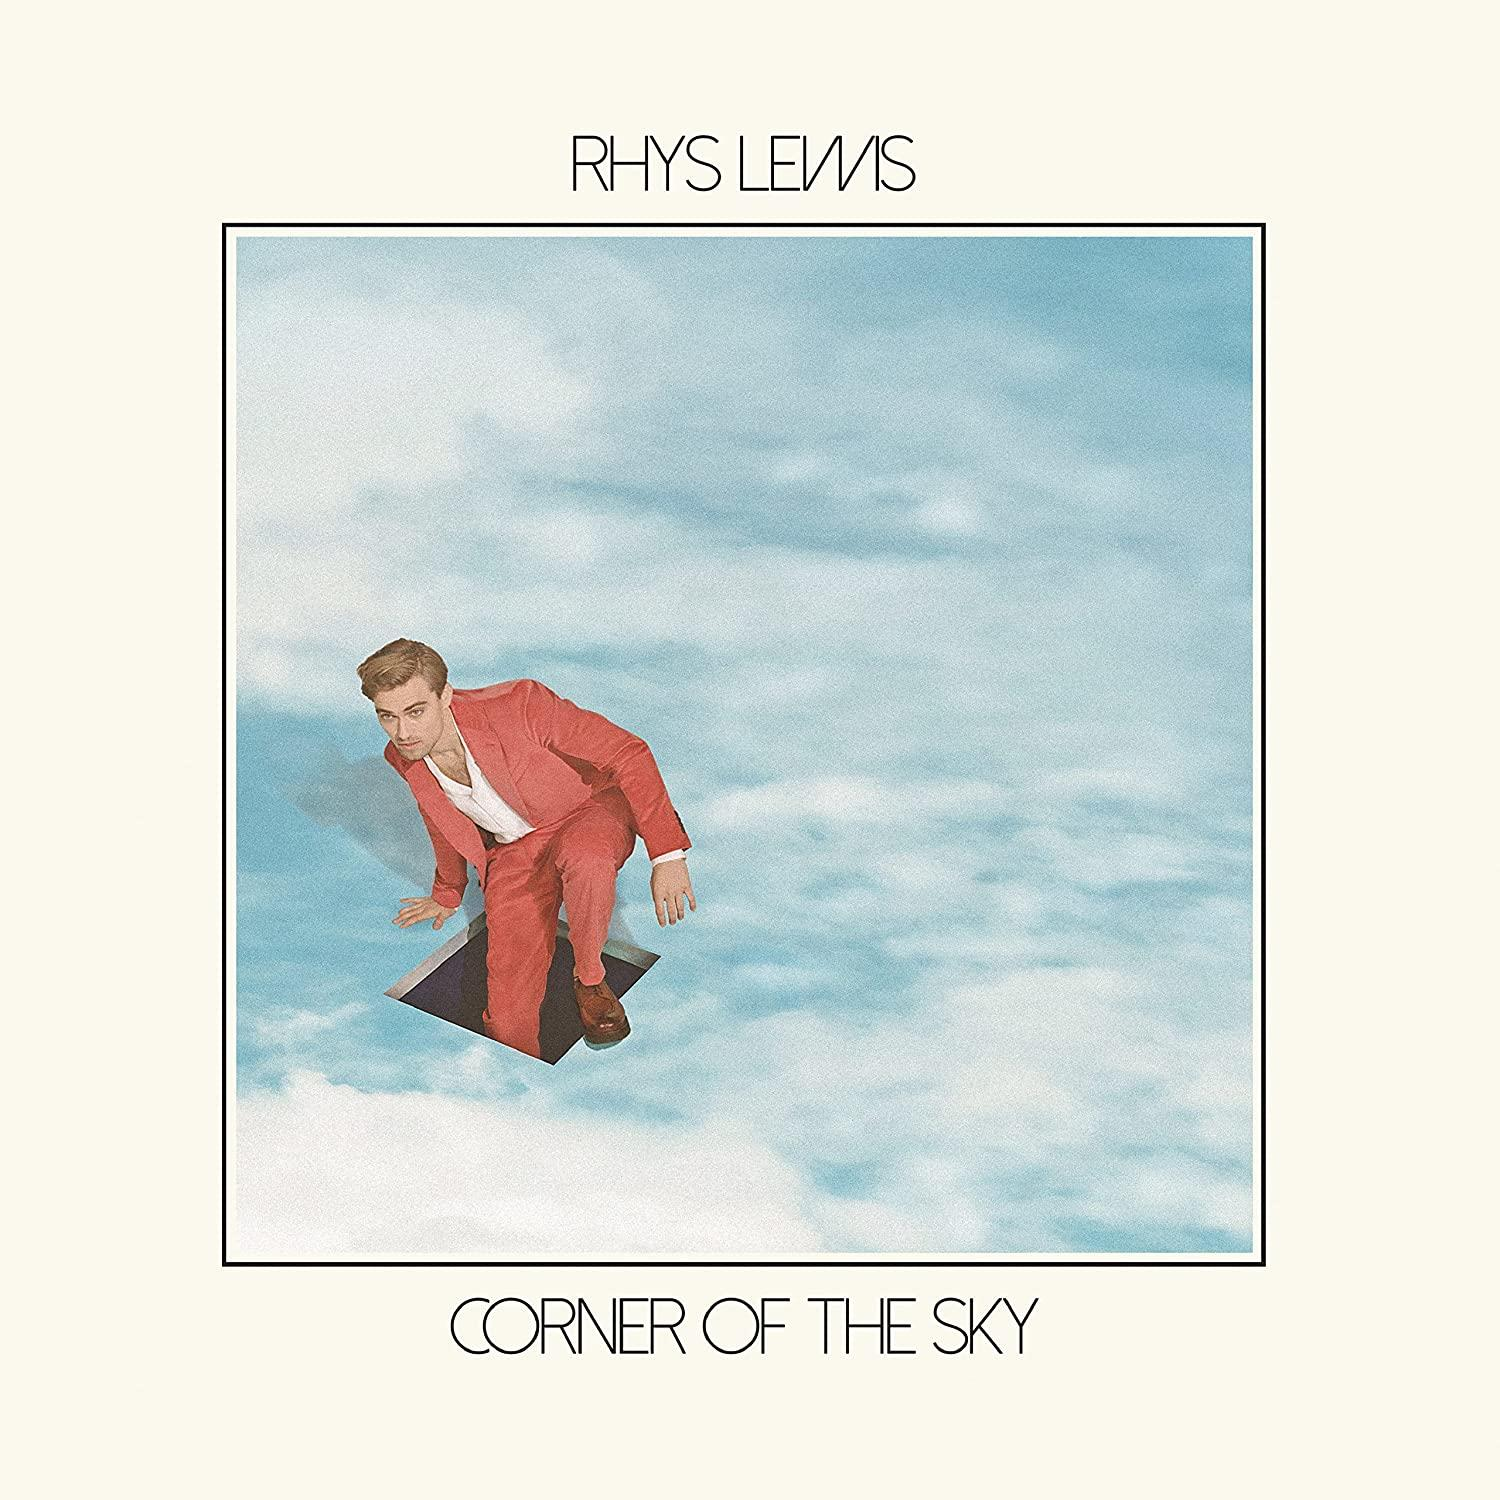 Lewis Sky - (Vinyl) (Vinyl) - Of Corner Rhys The